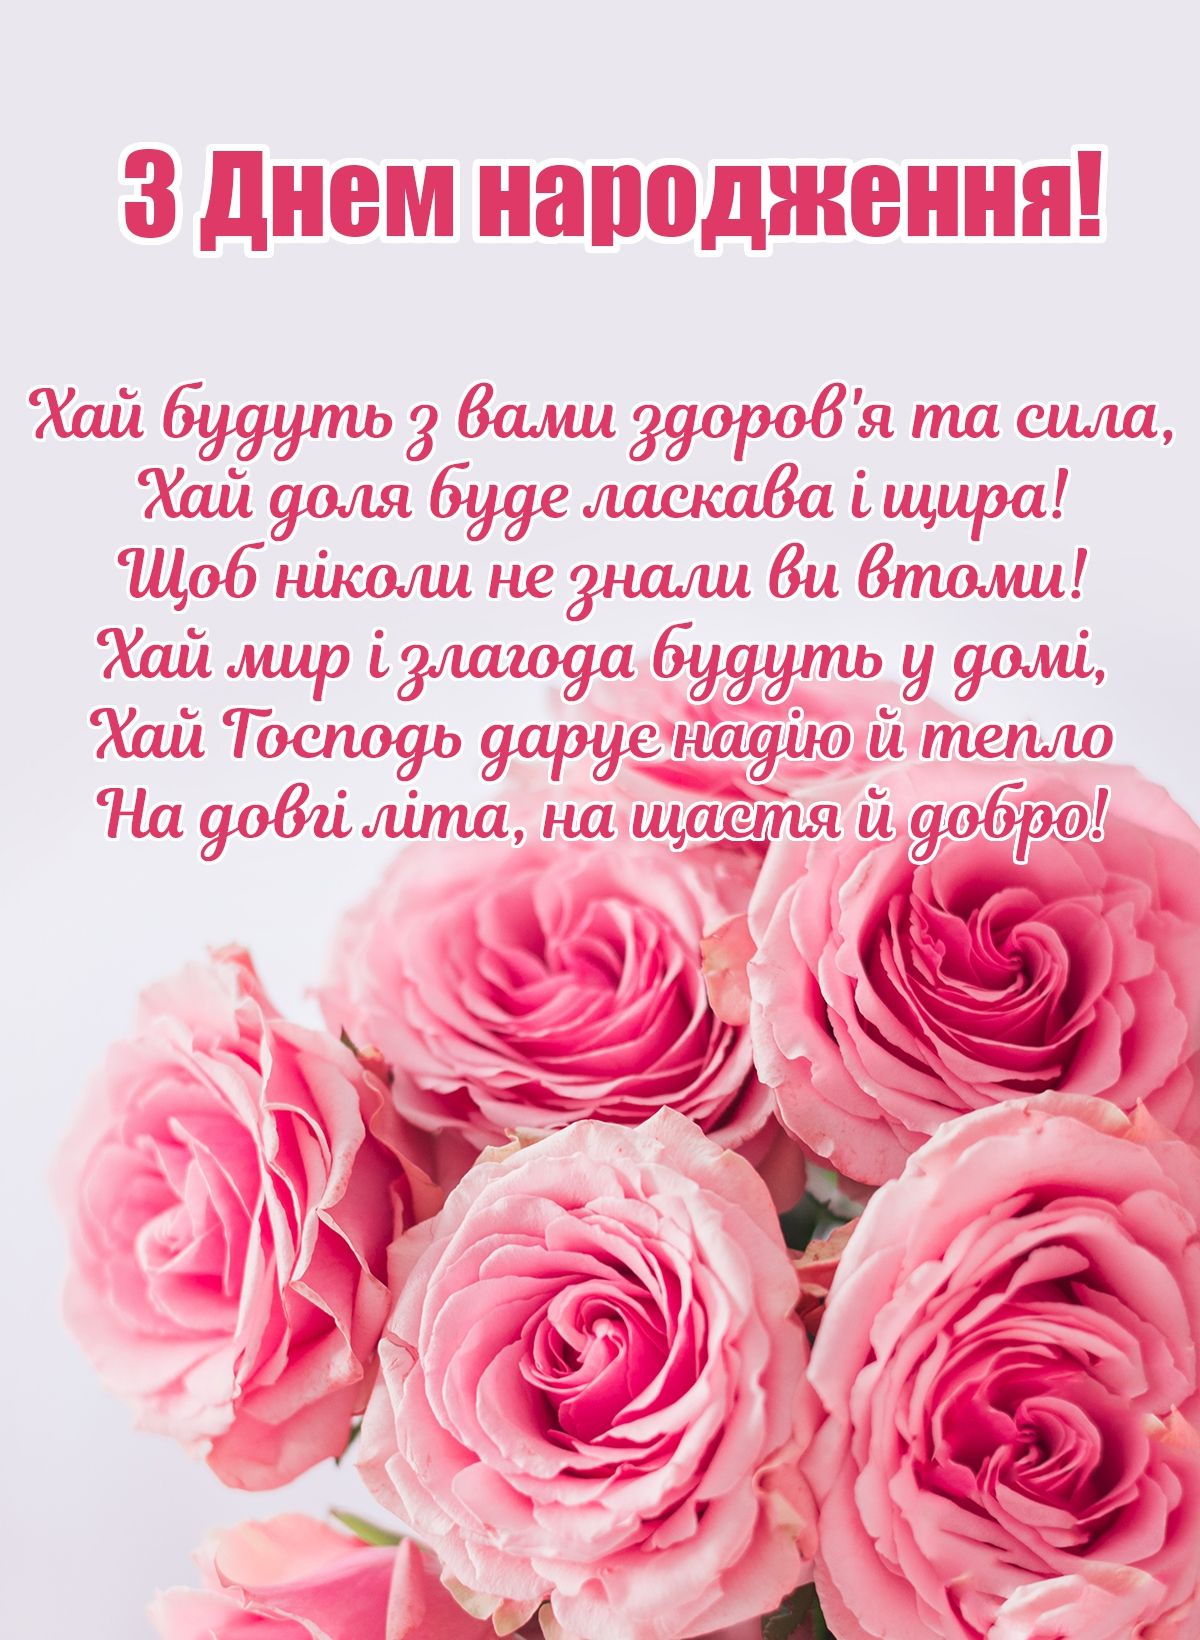 Привітання з днем народження лікарю, медику українською мовою
